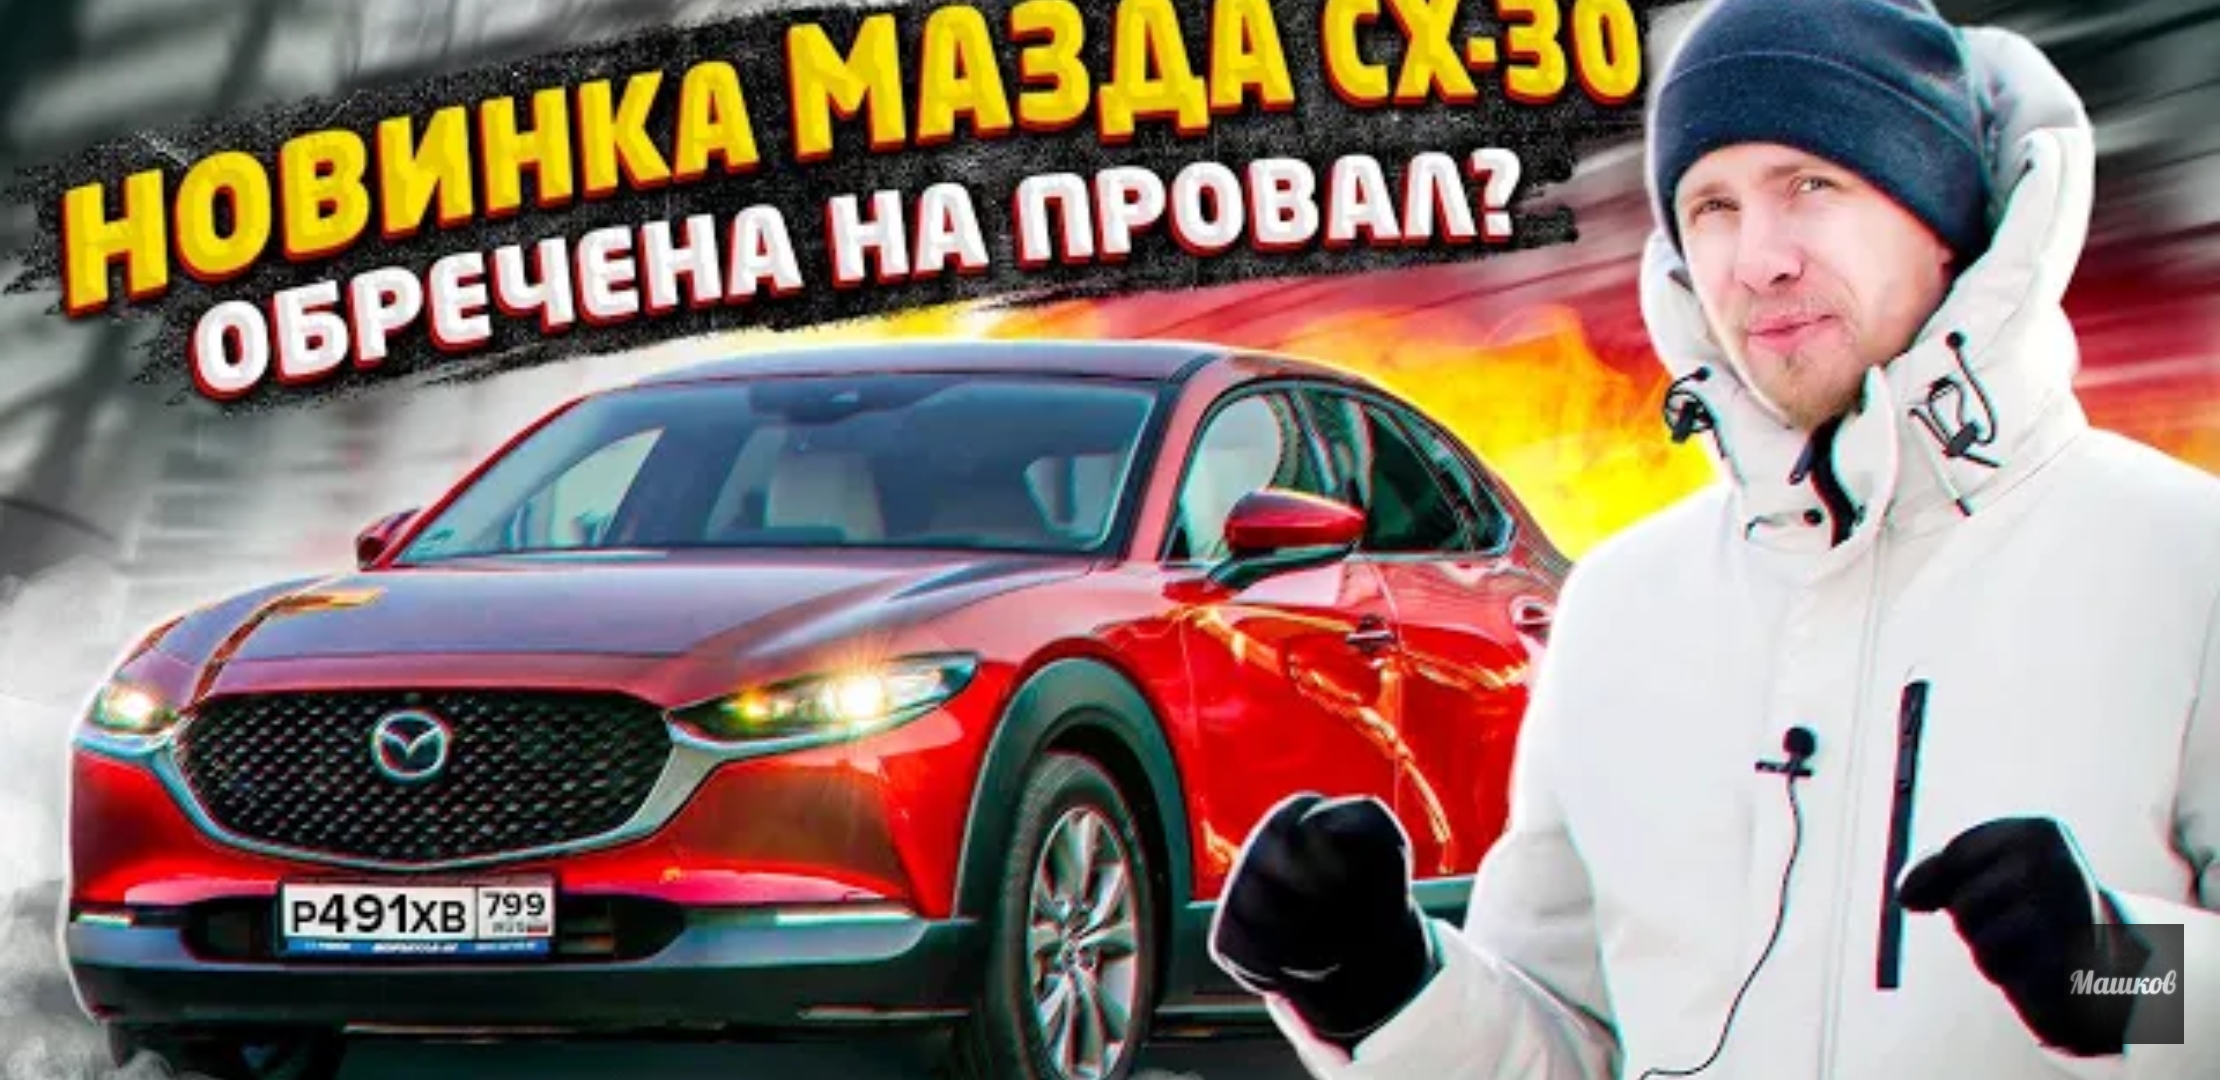 Анонс видео-теста Новая mazda cx-30 для кого эта машина? 